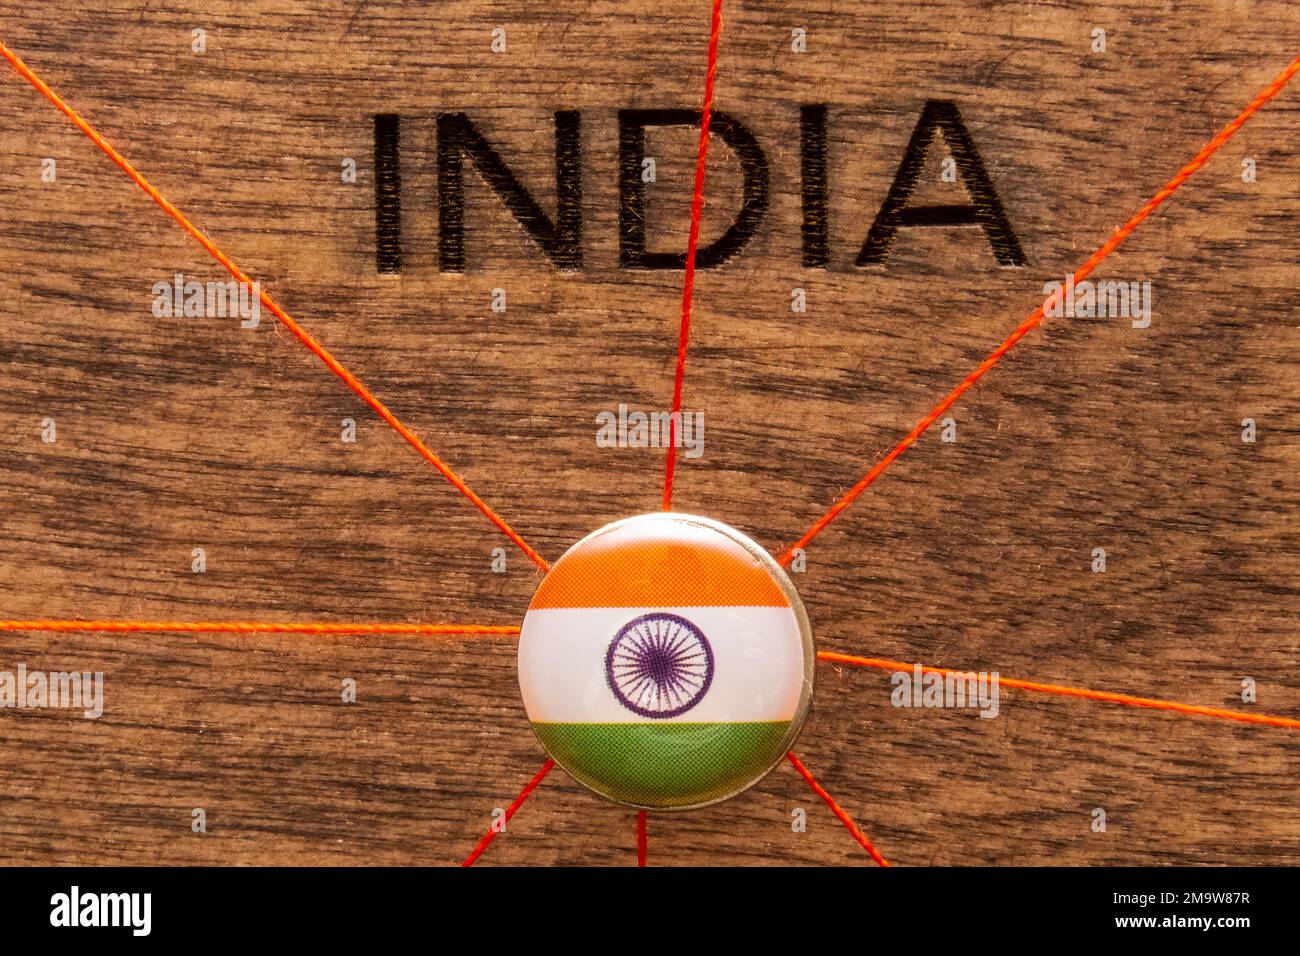 Pin de mapa de la india fotografías e imágenes de alta resolución - Página  2 - Alamy